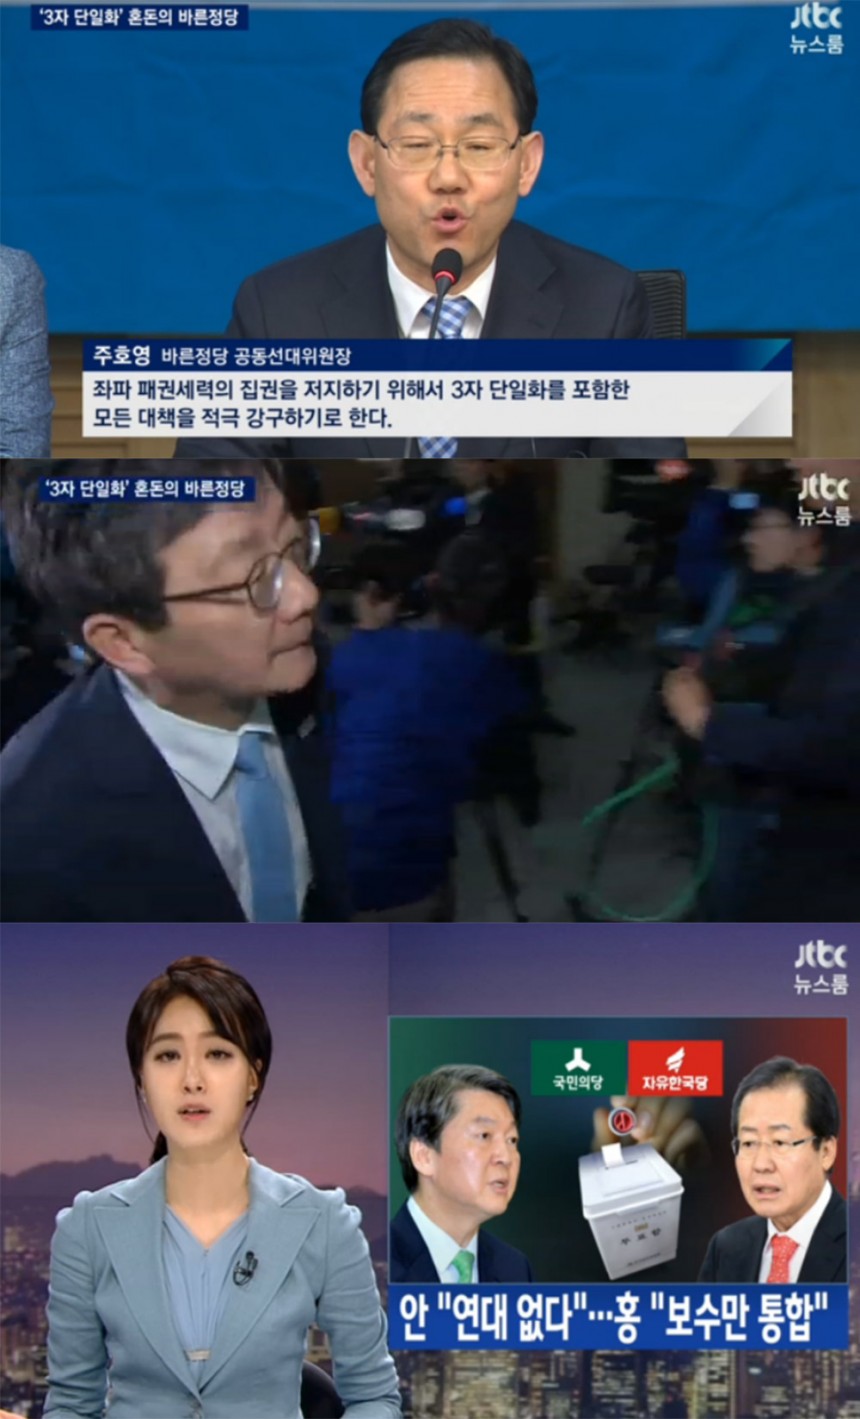 ‘뉴스룸’ 방송 화면 / JTBC ‘뉴스룸’ 방송 캡처